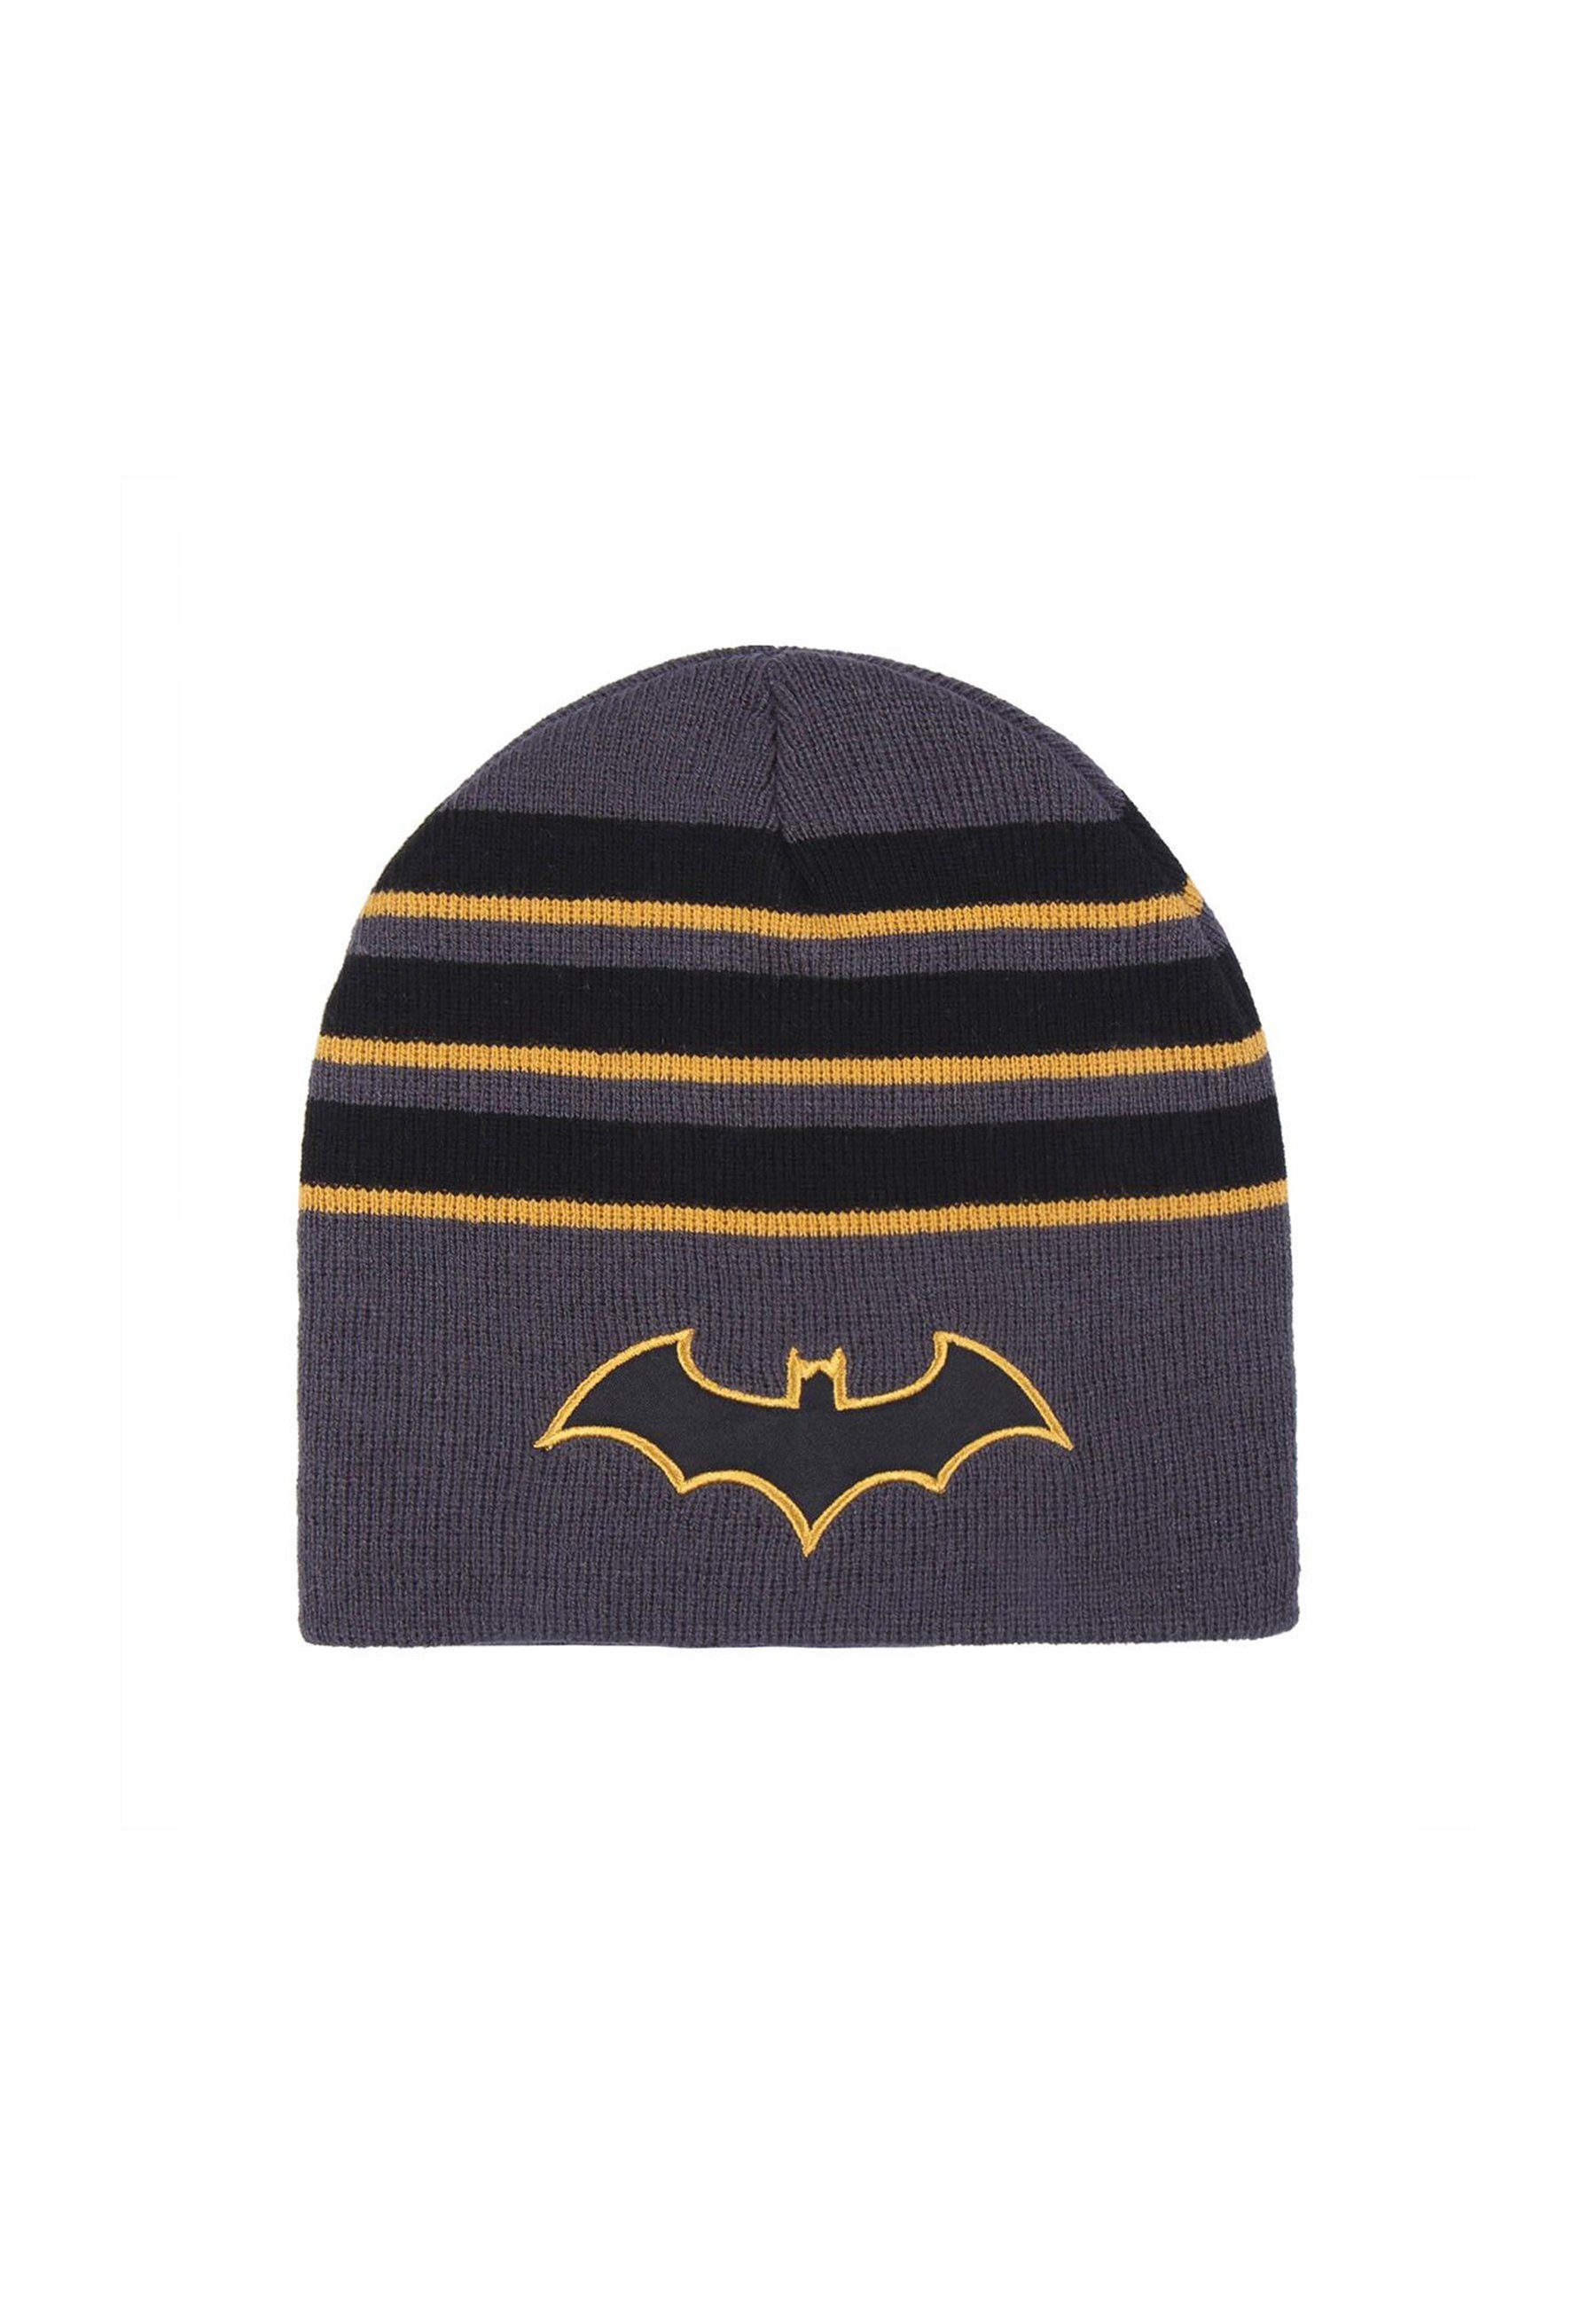 Strickmützte Kinder Jungen Beanie Winter-Beanie-Mütze Batman